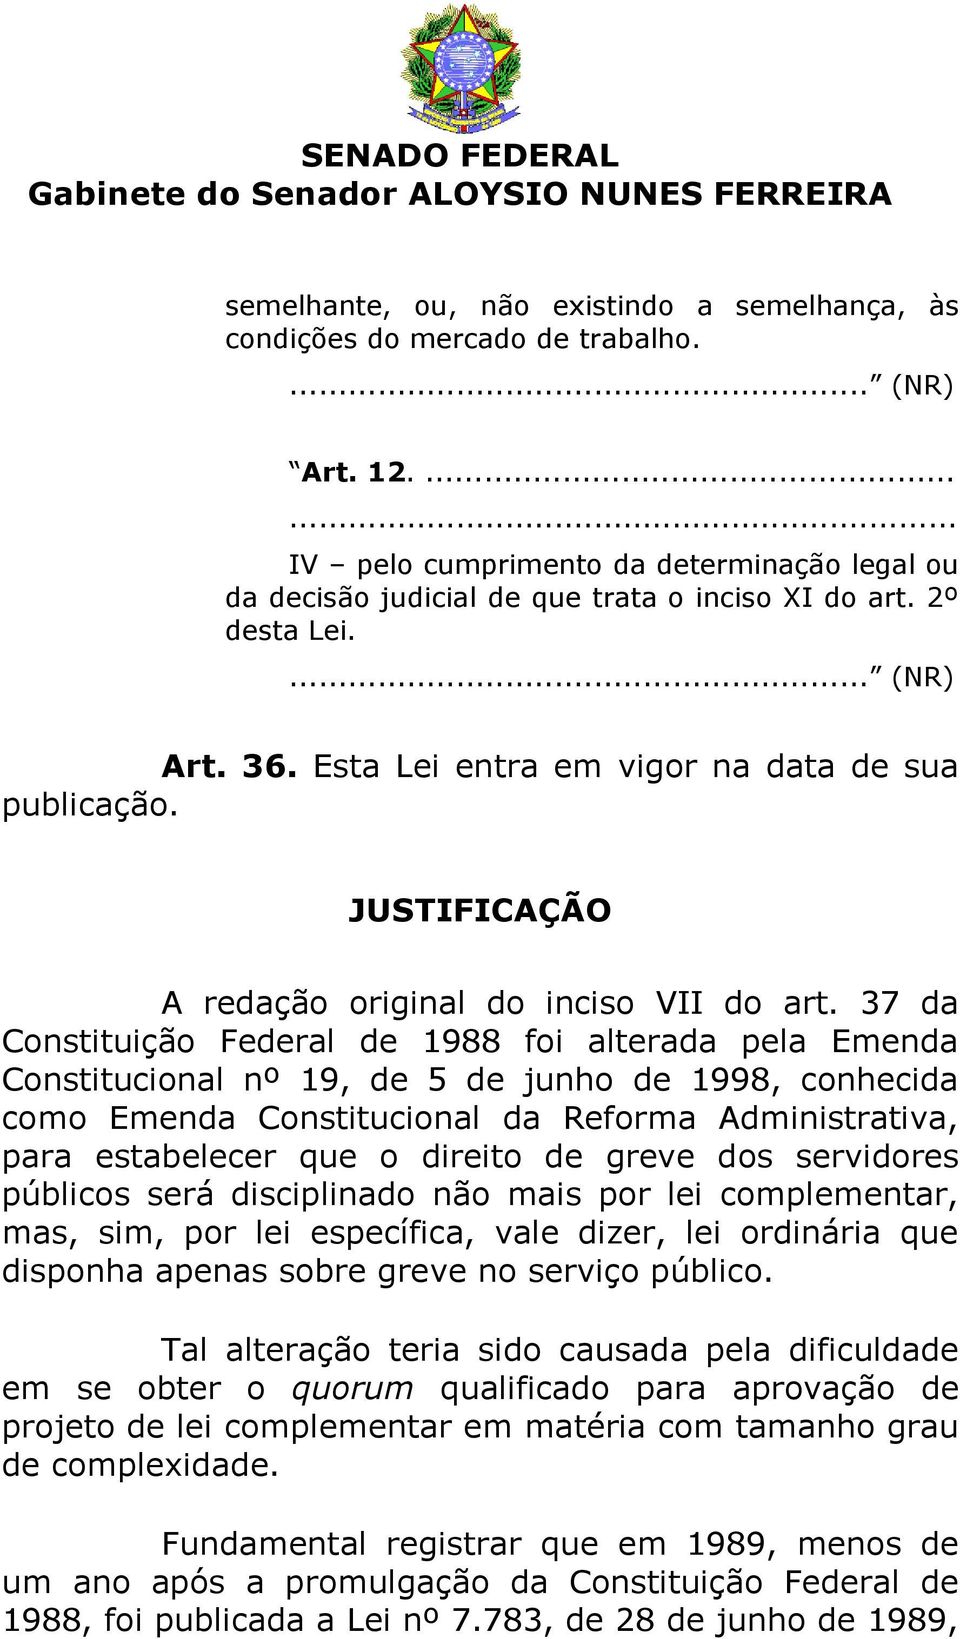 37 da Constituição Federal de 1988 foi alterada pela Emenda Constitucional nº 19, de 5 de junho de 1998, conhecida como Emenda Constitucional da Reforma Administrativa, para estabelecer que o direito